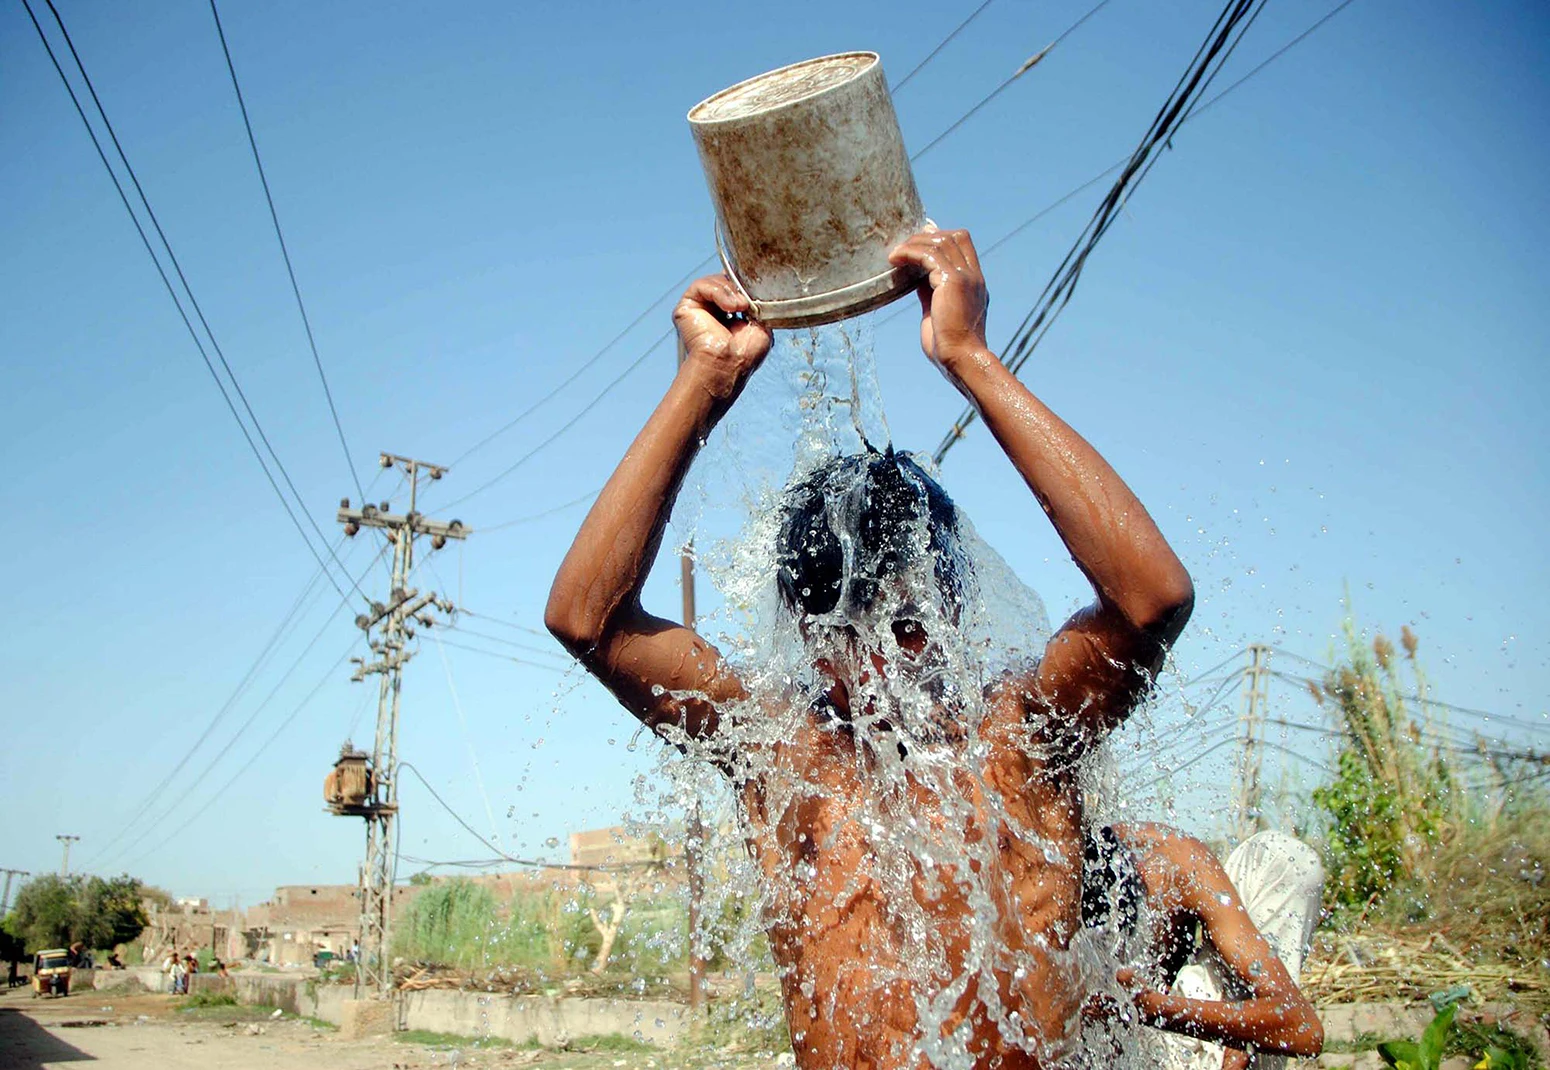 Молодой человек поливает себя водой во время сильной жары в Хайдарабаде, Пакистан, 4 апреля 2022 года.